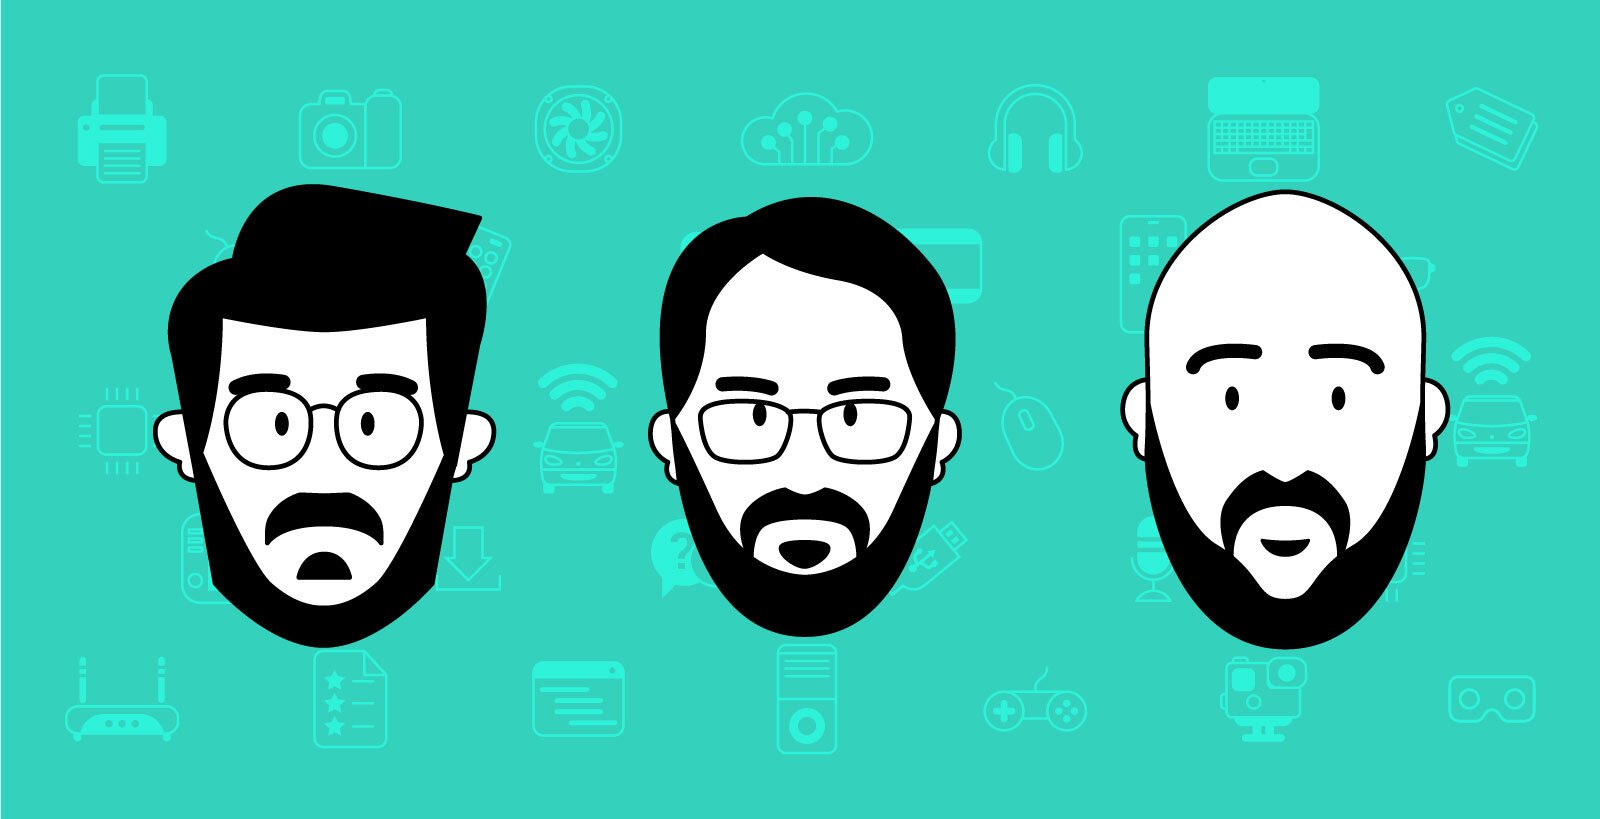 3 στον αέρα Podcast S07E09 - Apple, Qualcomm, Facebook συνδρομή, Public και...Influencers